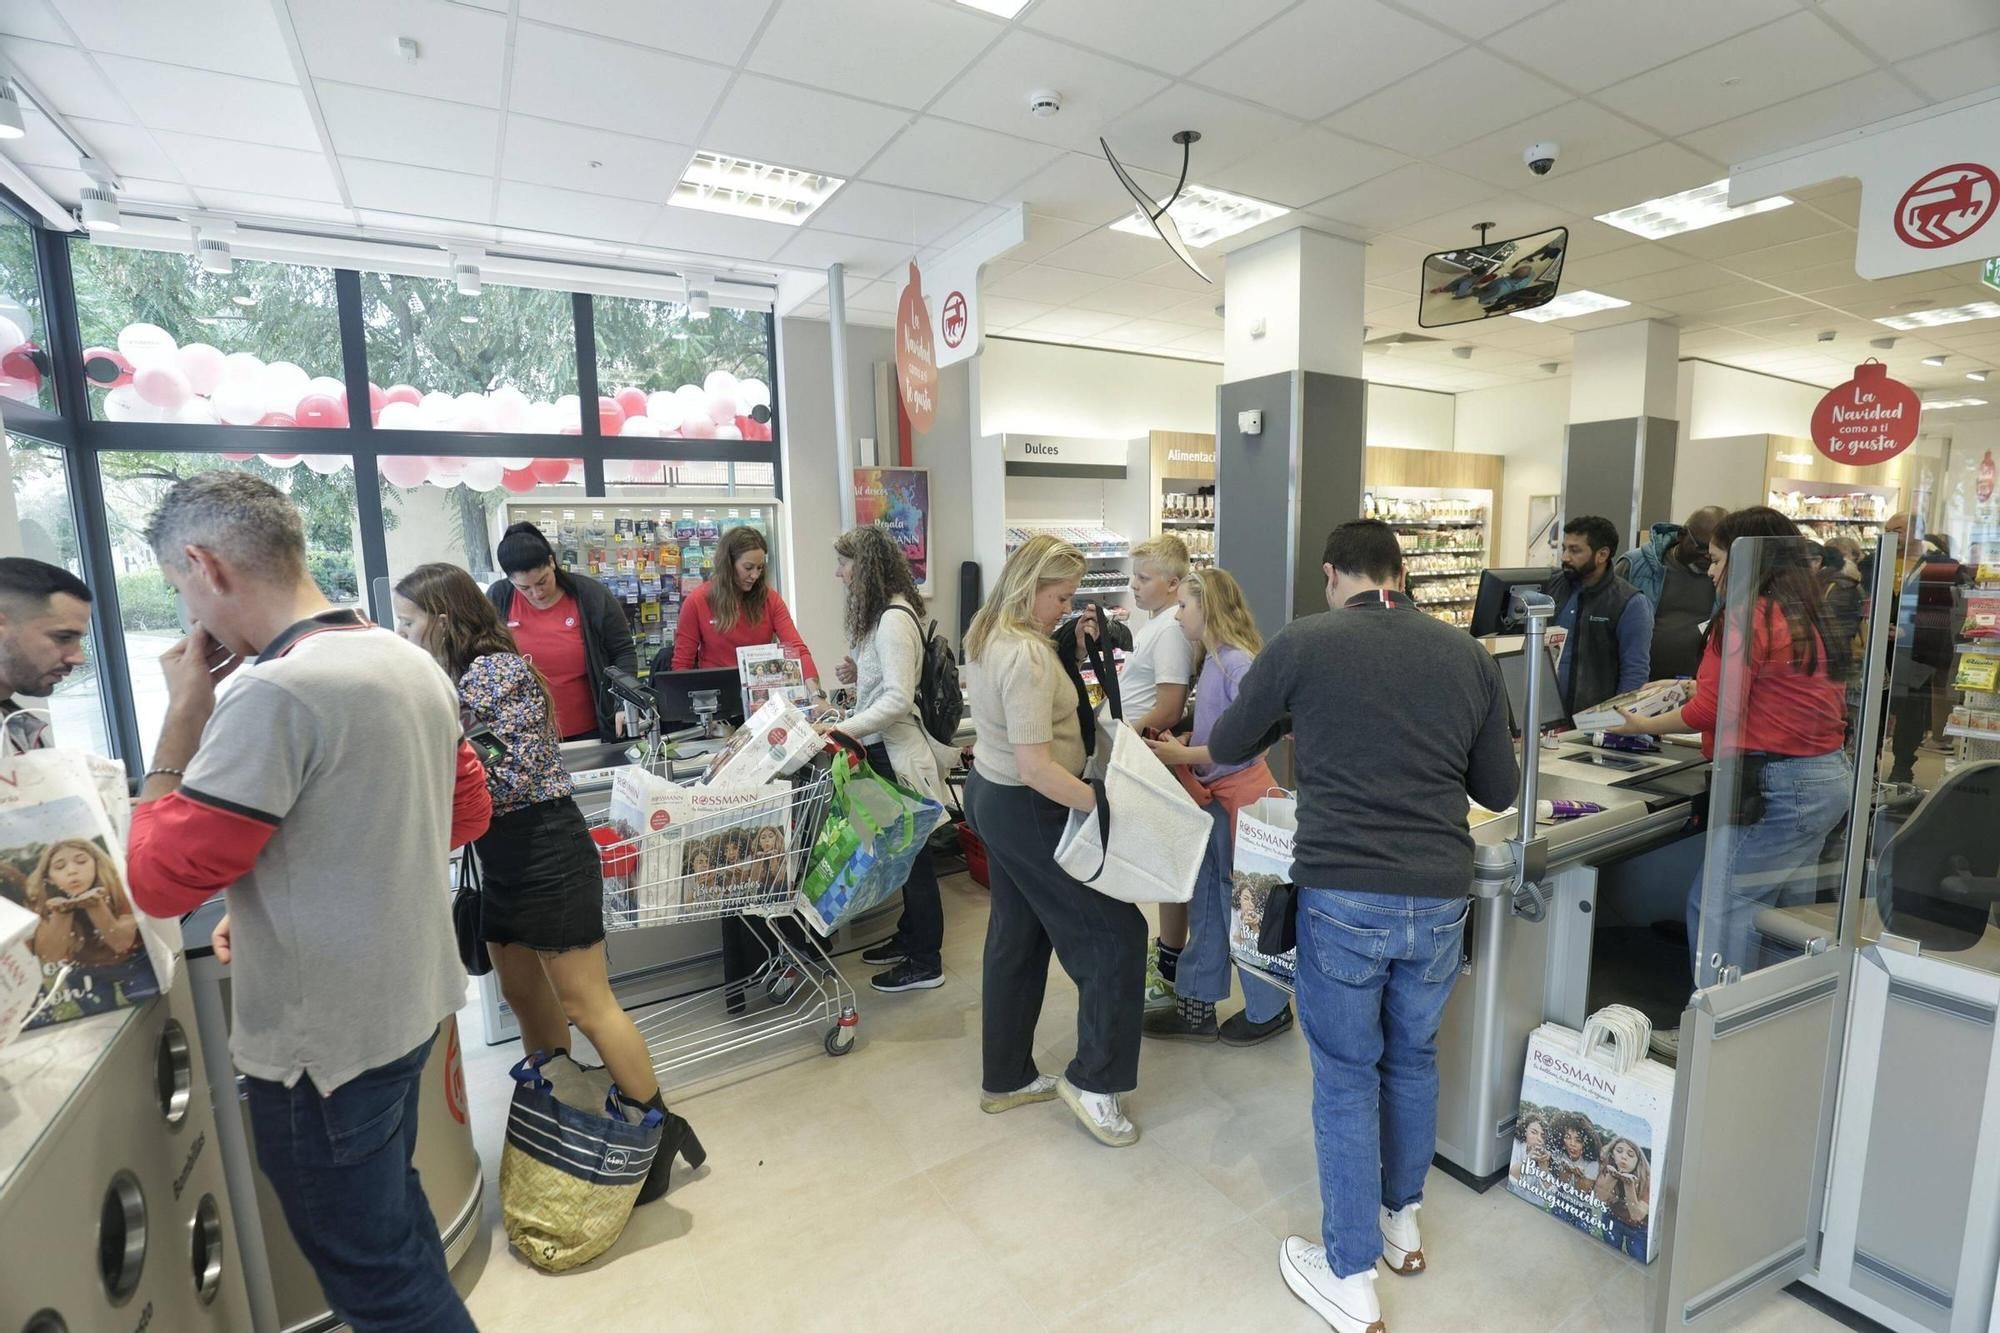 Lange Schlange, kaufwütige Kunden: Der Drogeriemarkt Rossmann eröffnet seine Filiale in Palma mit einem Knall